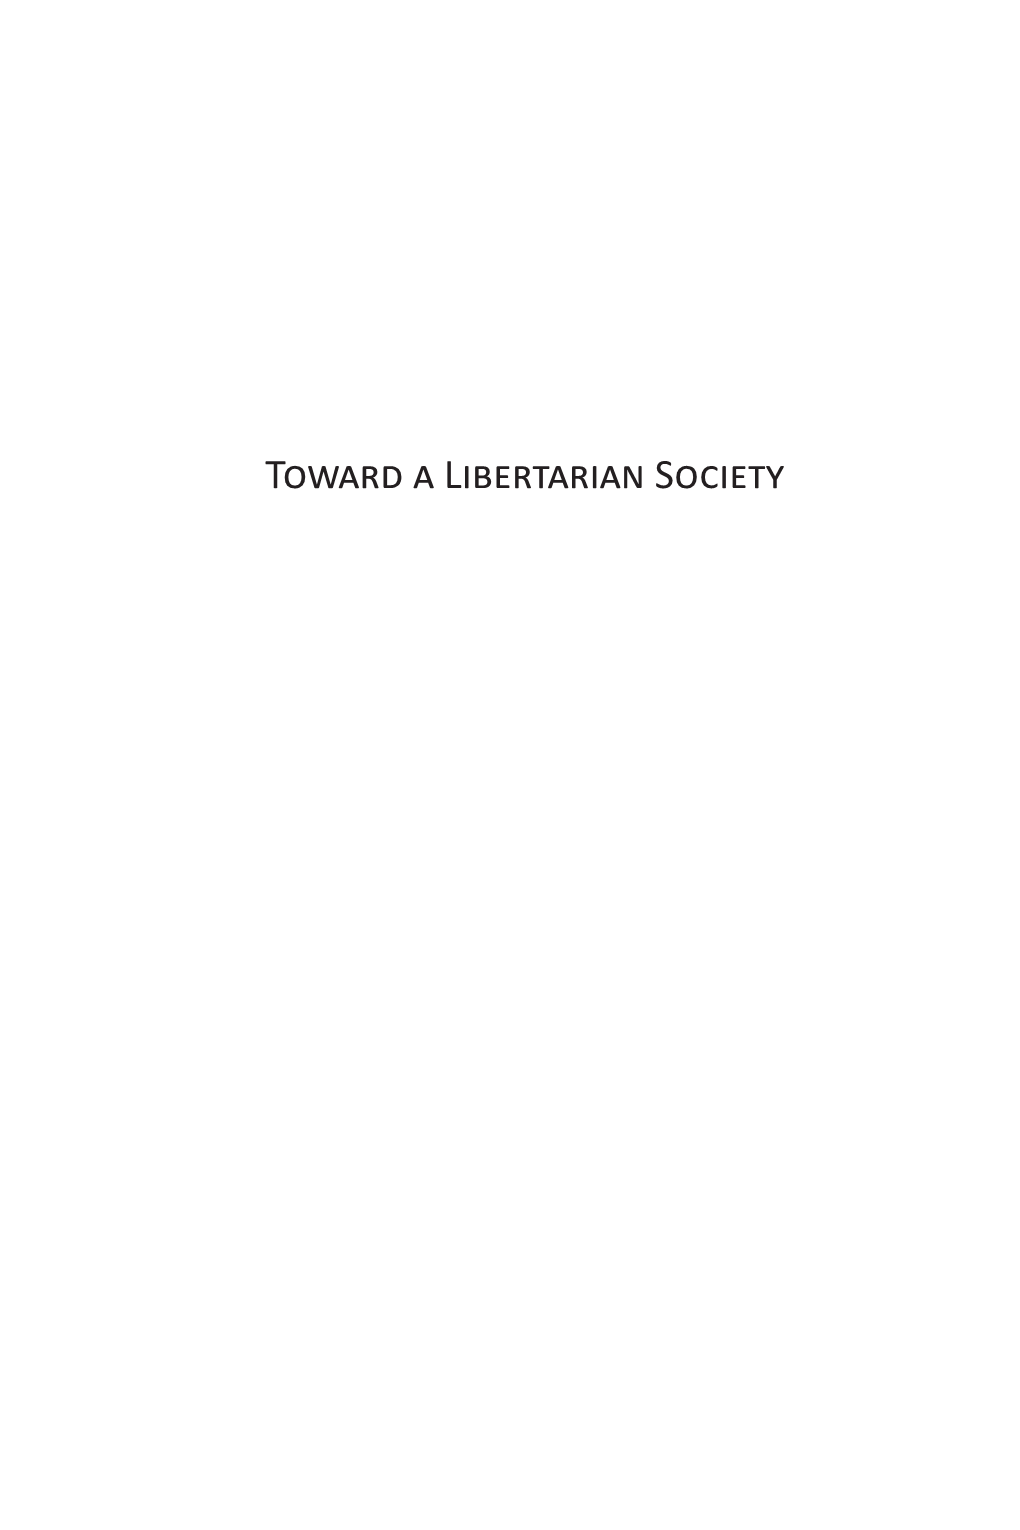 Toward a Libertarian Society 2014.Indb